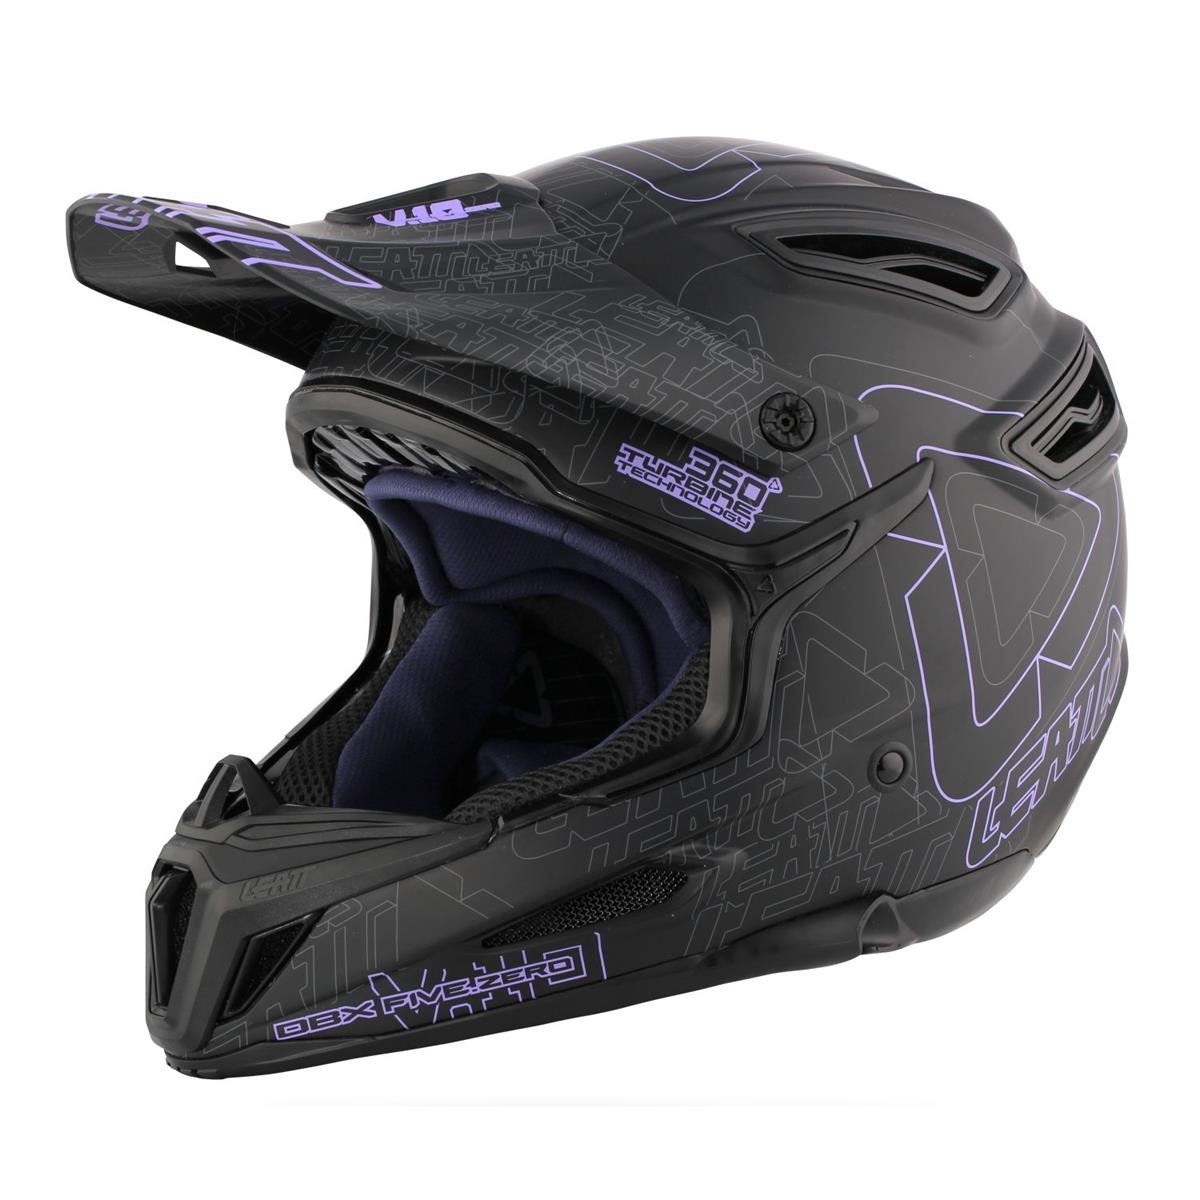 Leatt Casque VTT Downhill DBX 5.0 Composite Noir/Violet/Gris